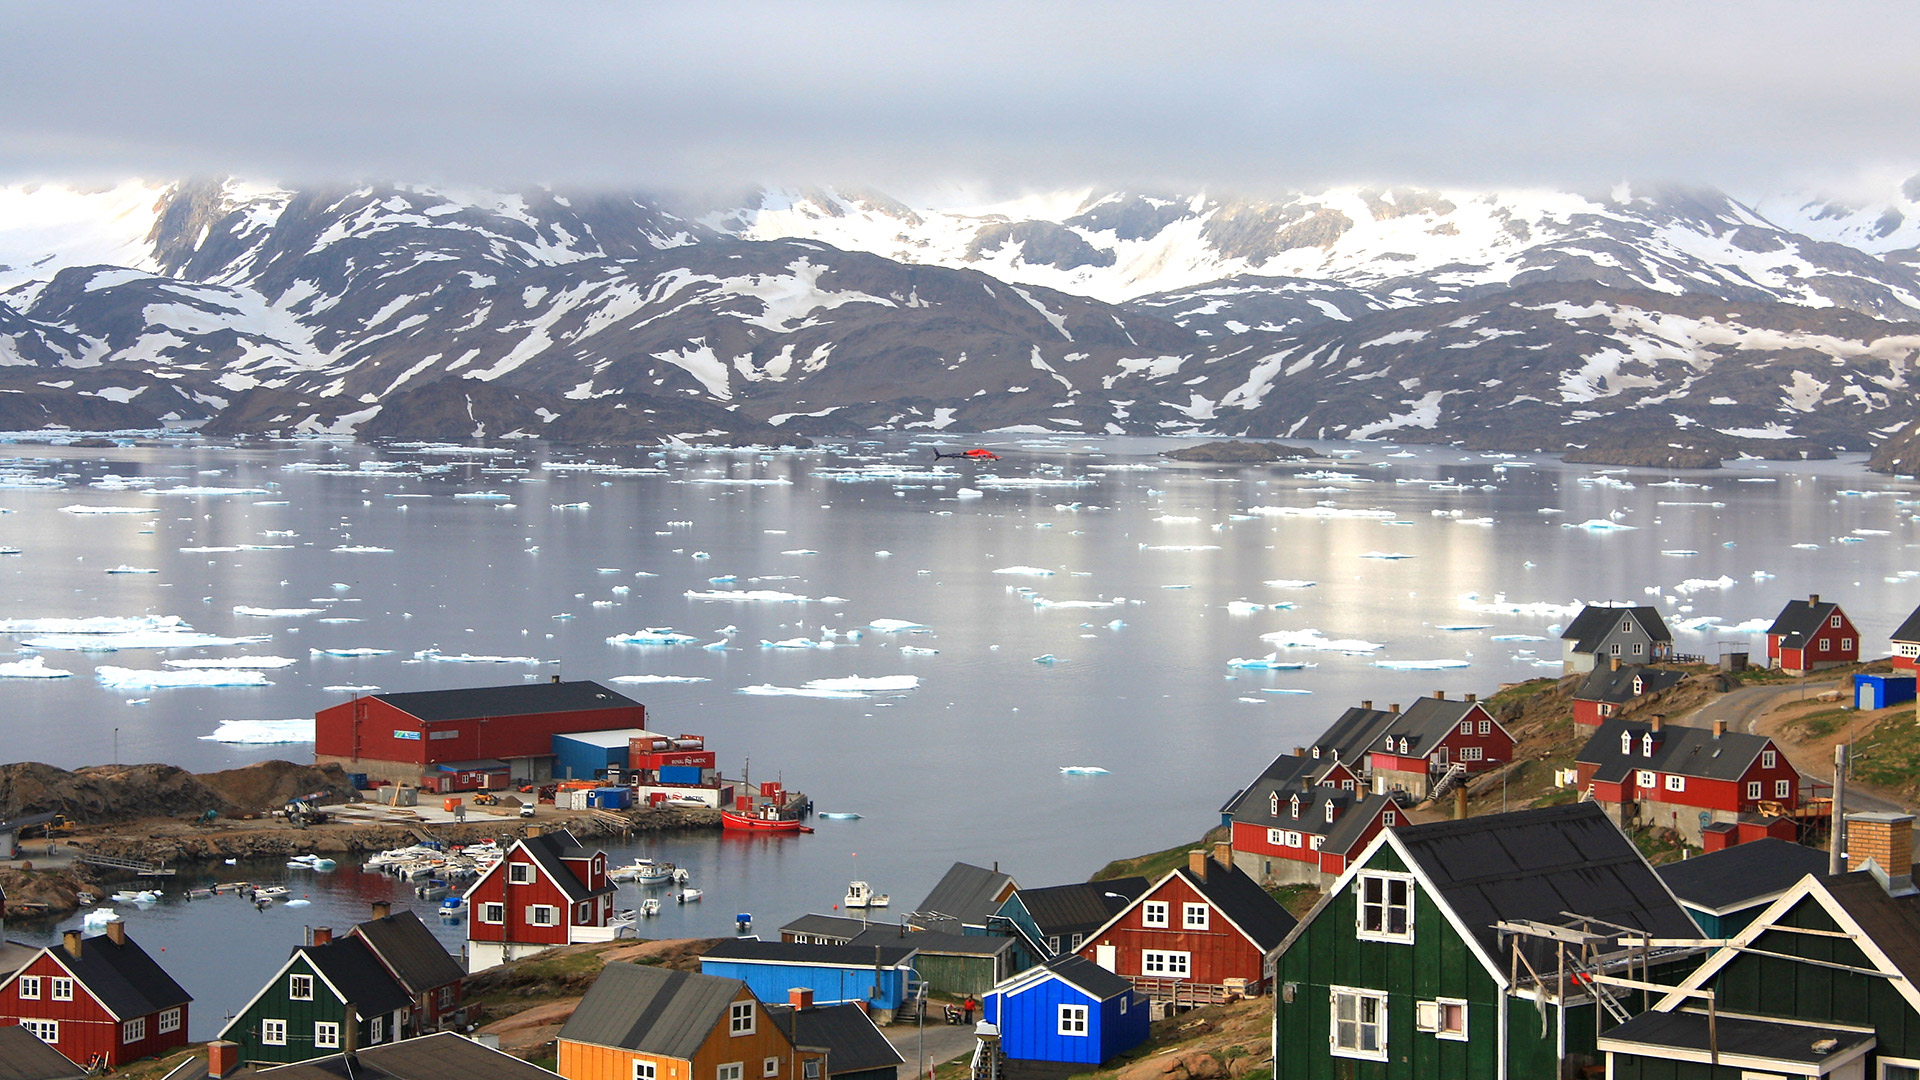 Groenlandia, la tierra de fantasía glacial, nunca se ha registrado como un lugar de interés gastronómico. Pero tampoco las cercanas Islas Feroe, hasta que el chef Poul Andrias Ziska se hizo cargo de la cocina de KOKS 